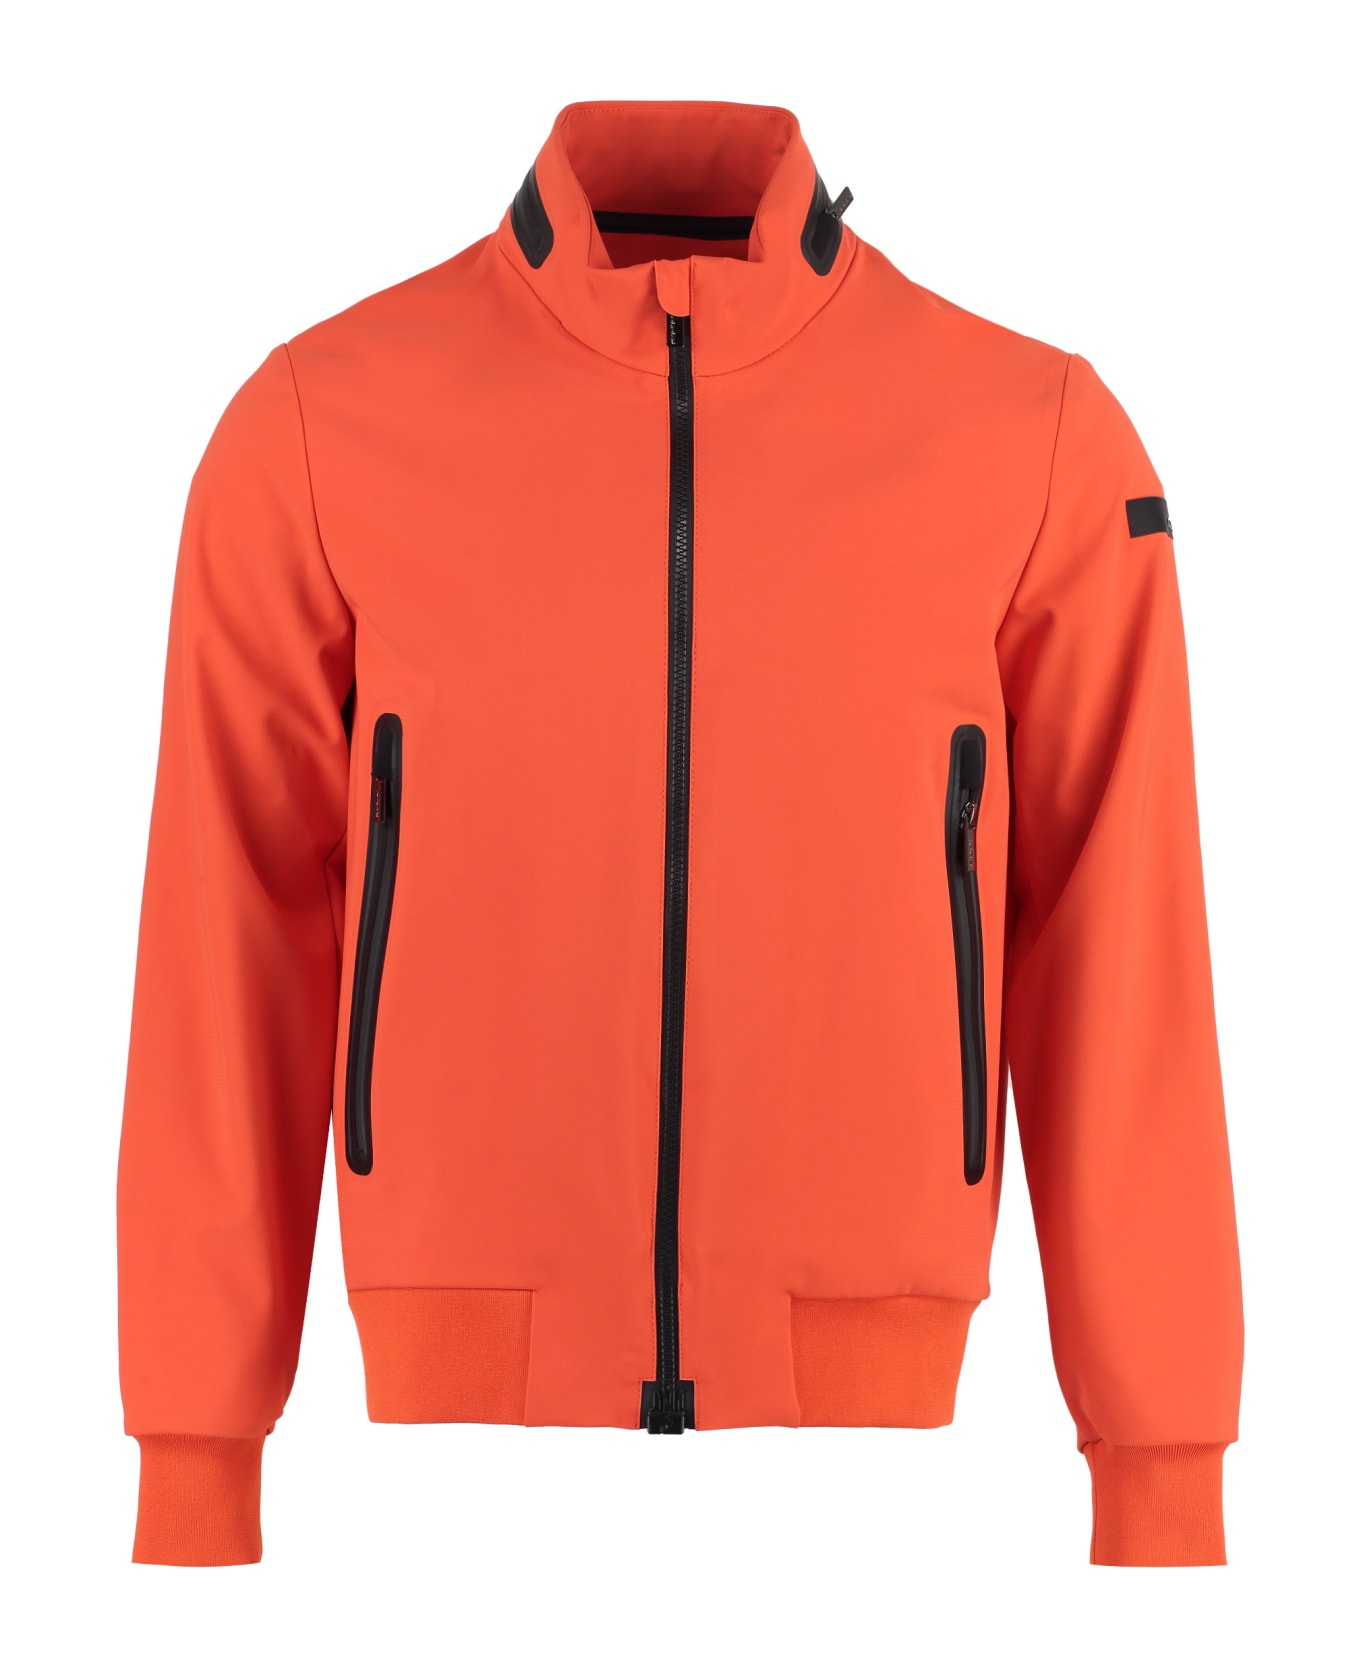 RRD - Roberto Ricci Design Techno Fabric Jacket - Orange レインコート